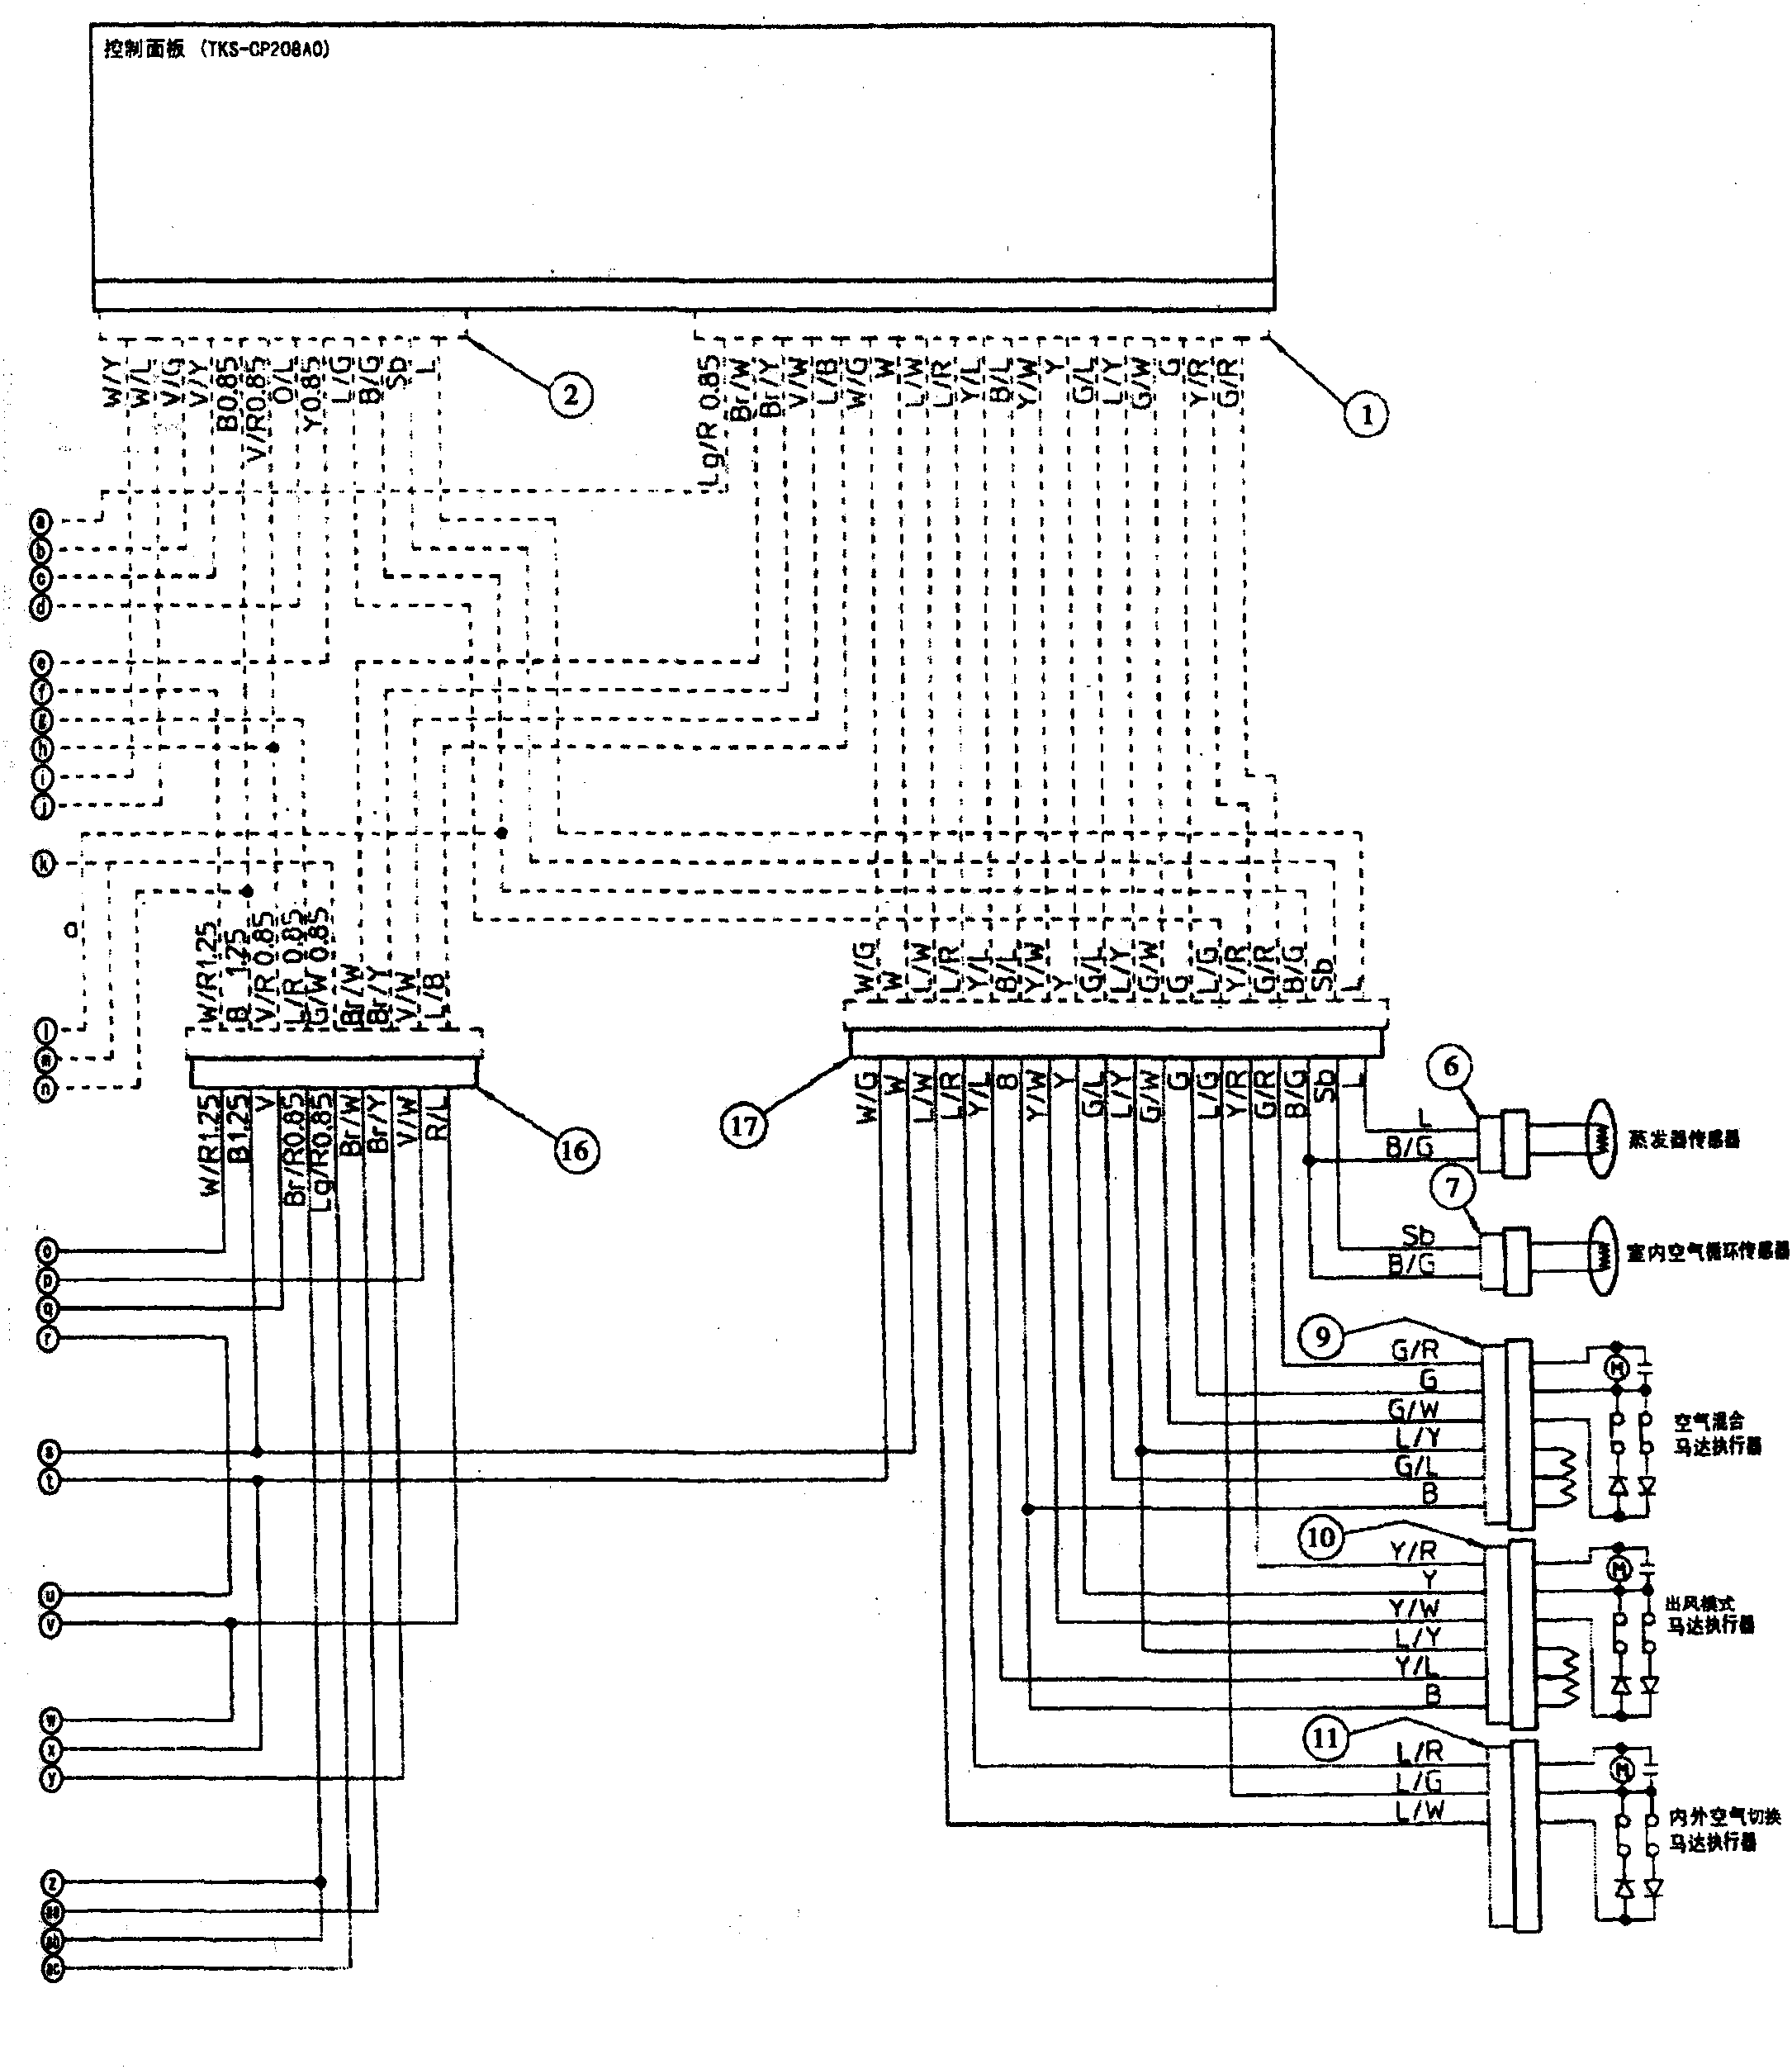 空调电路图(图1-2-4和图1-2-5)